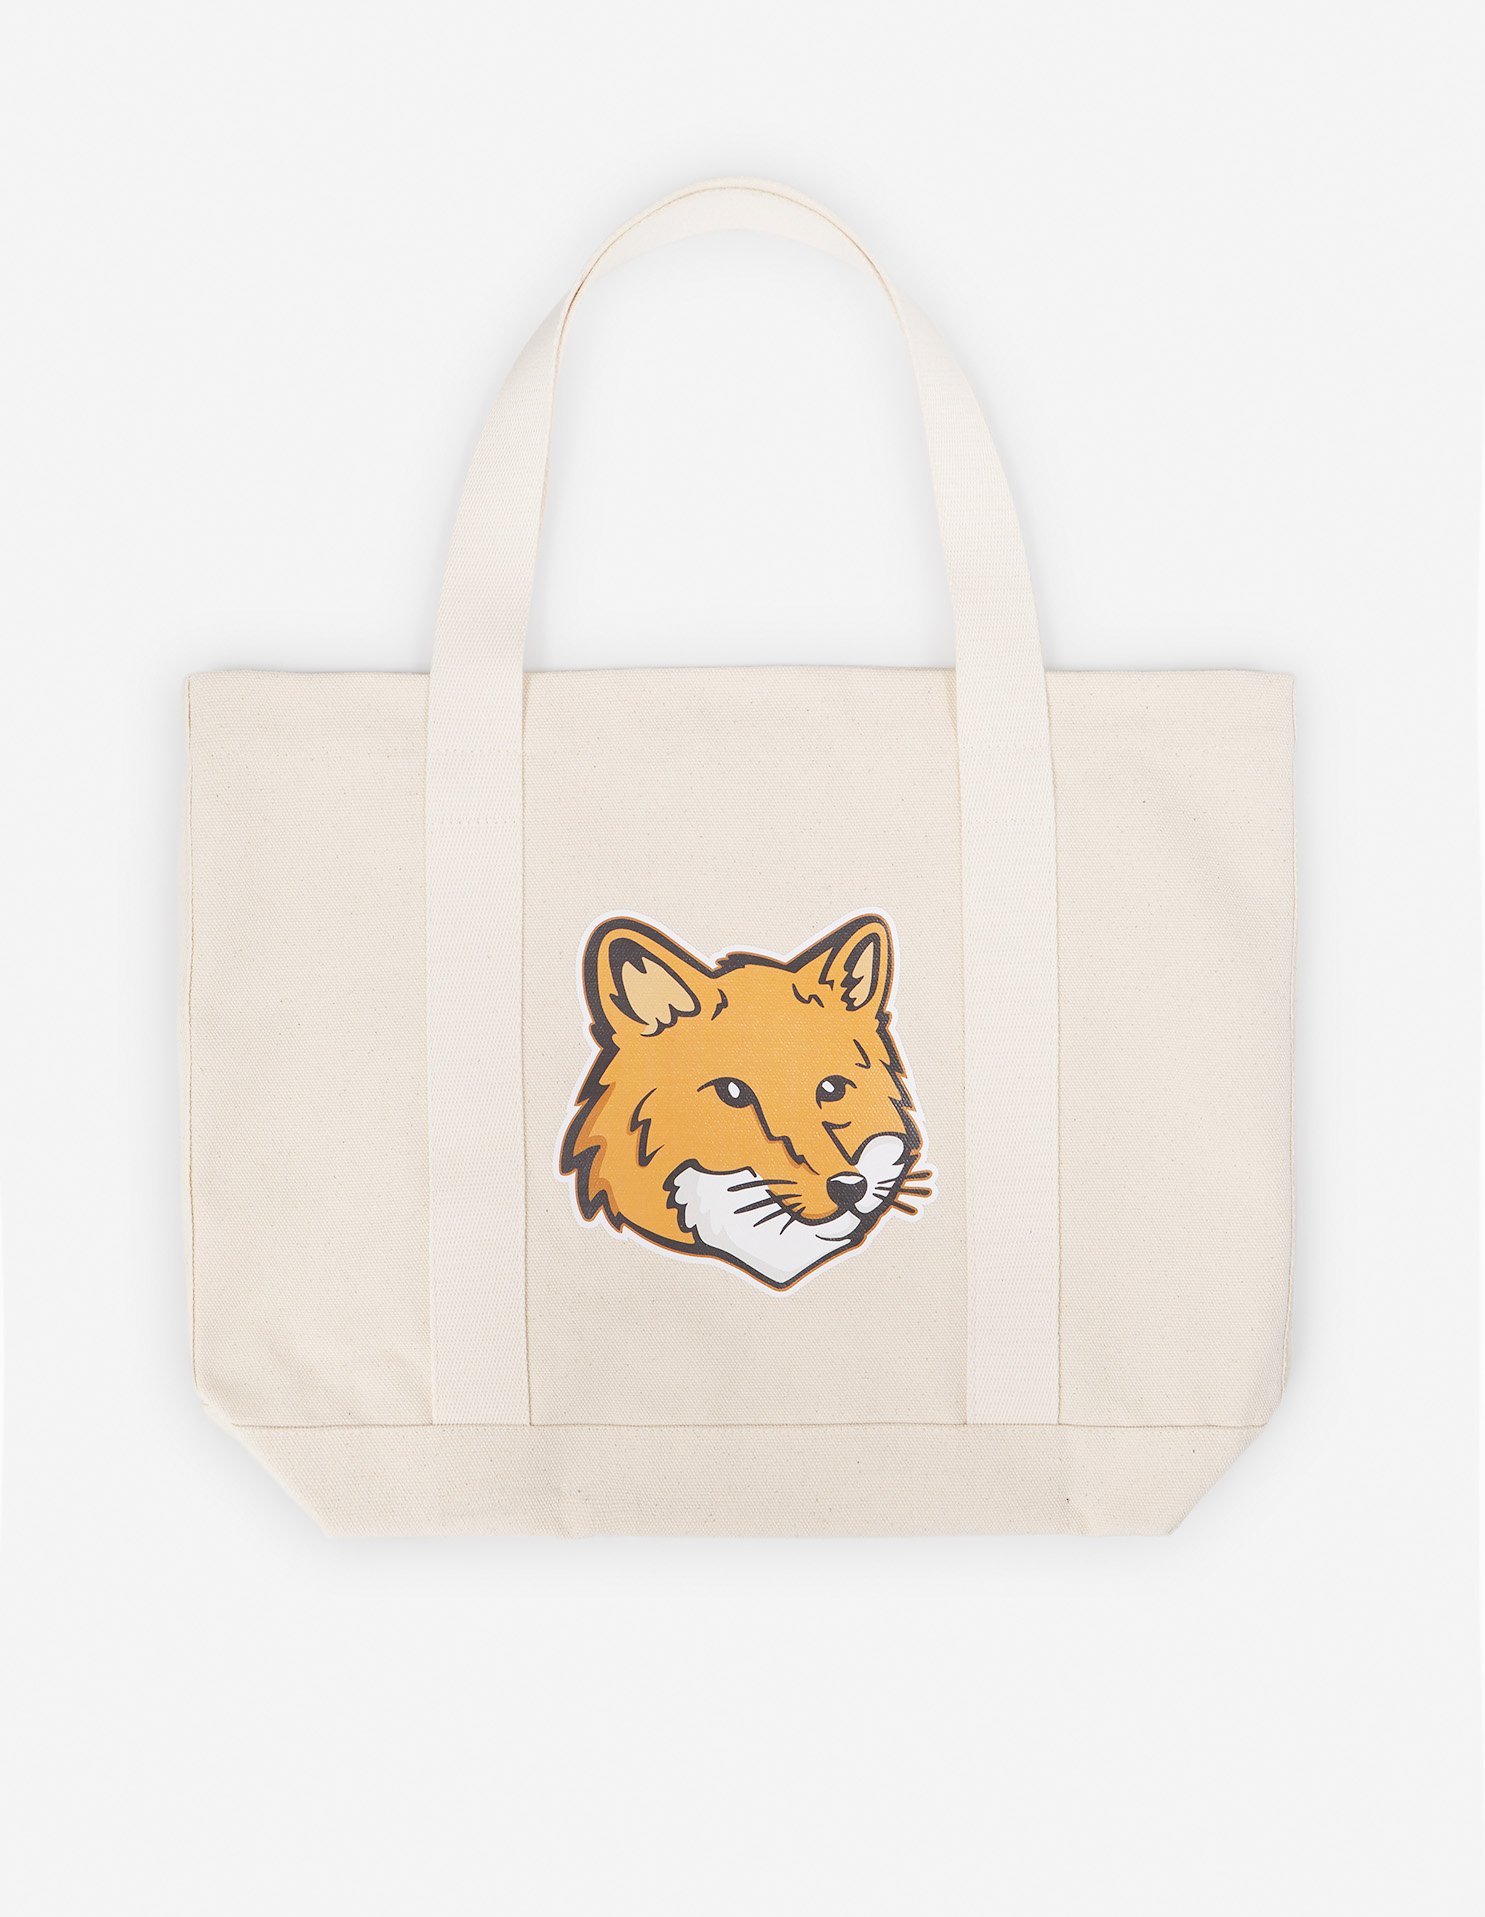 How to Bag a Fox  